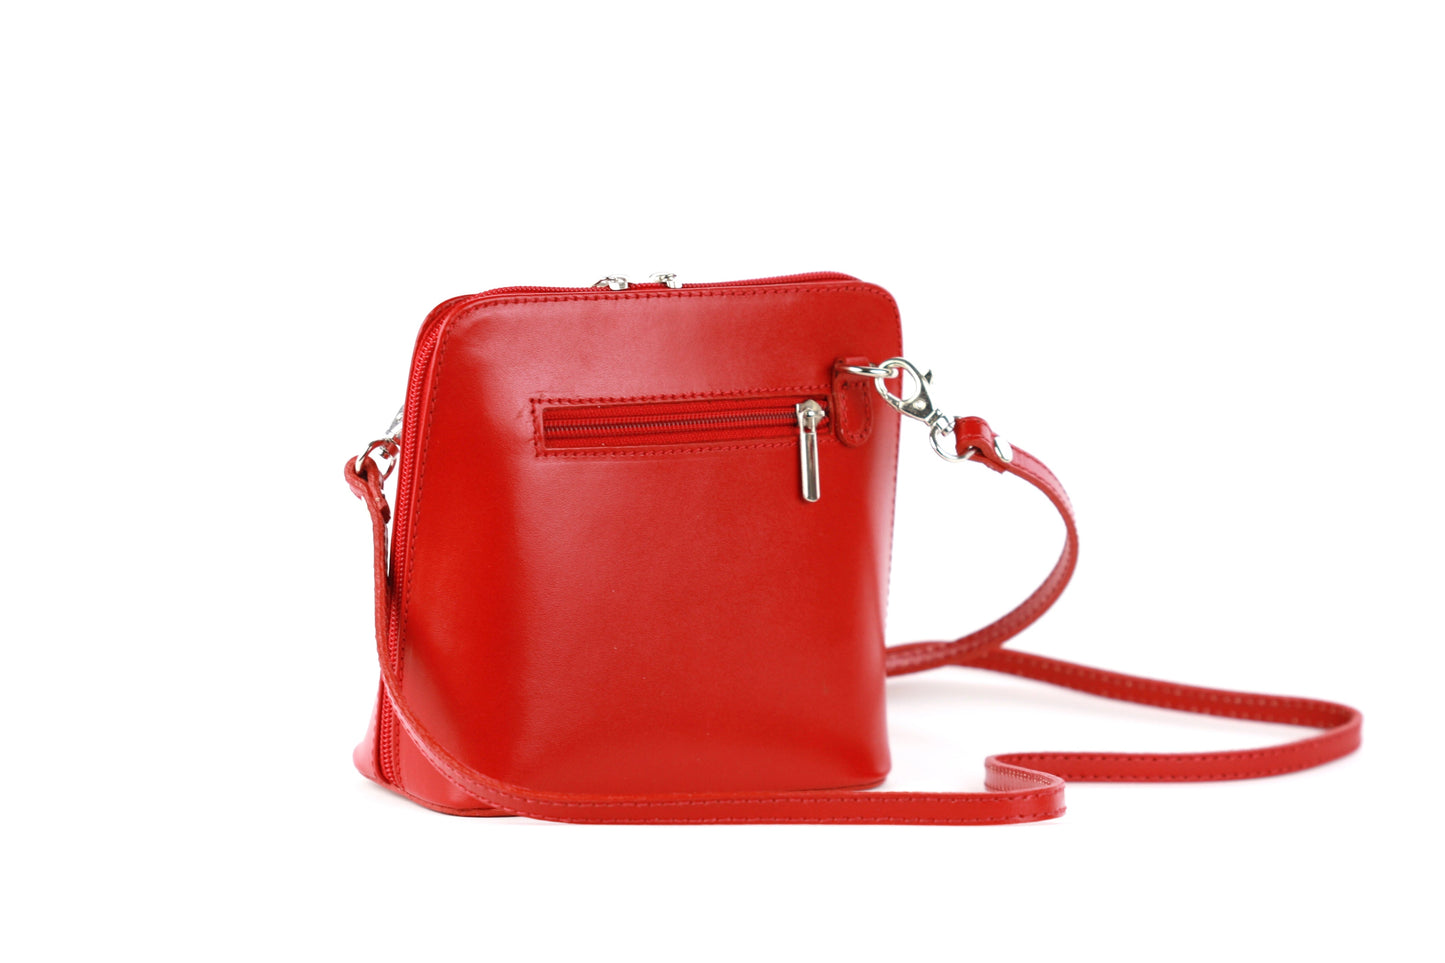 Dalida bag in light red